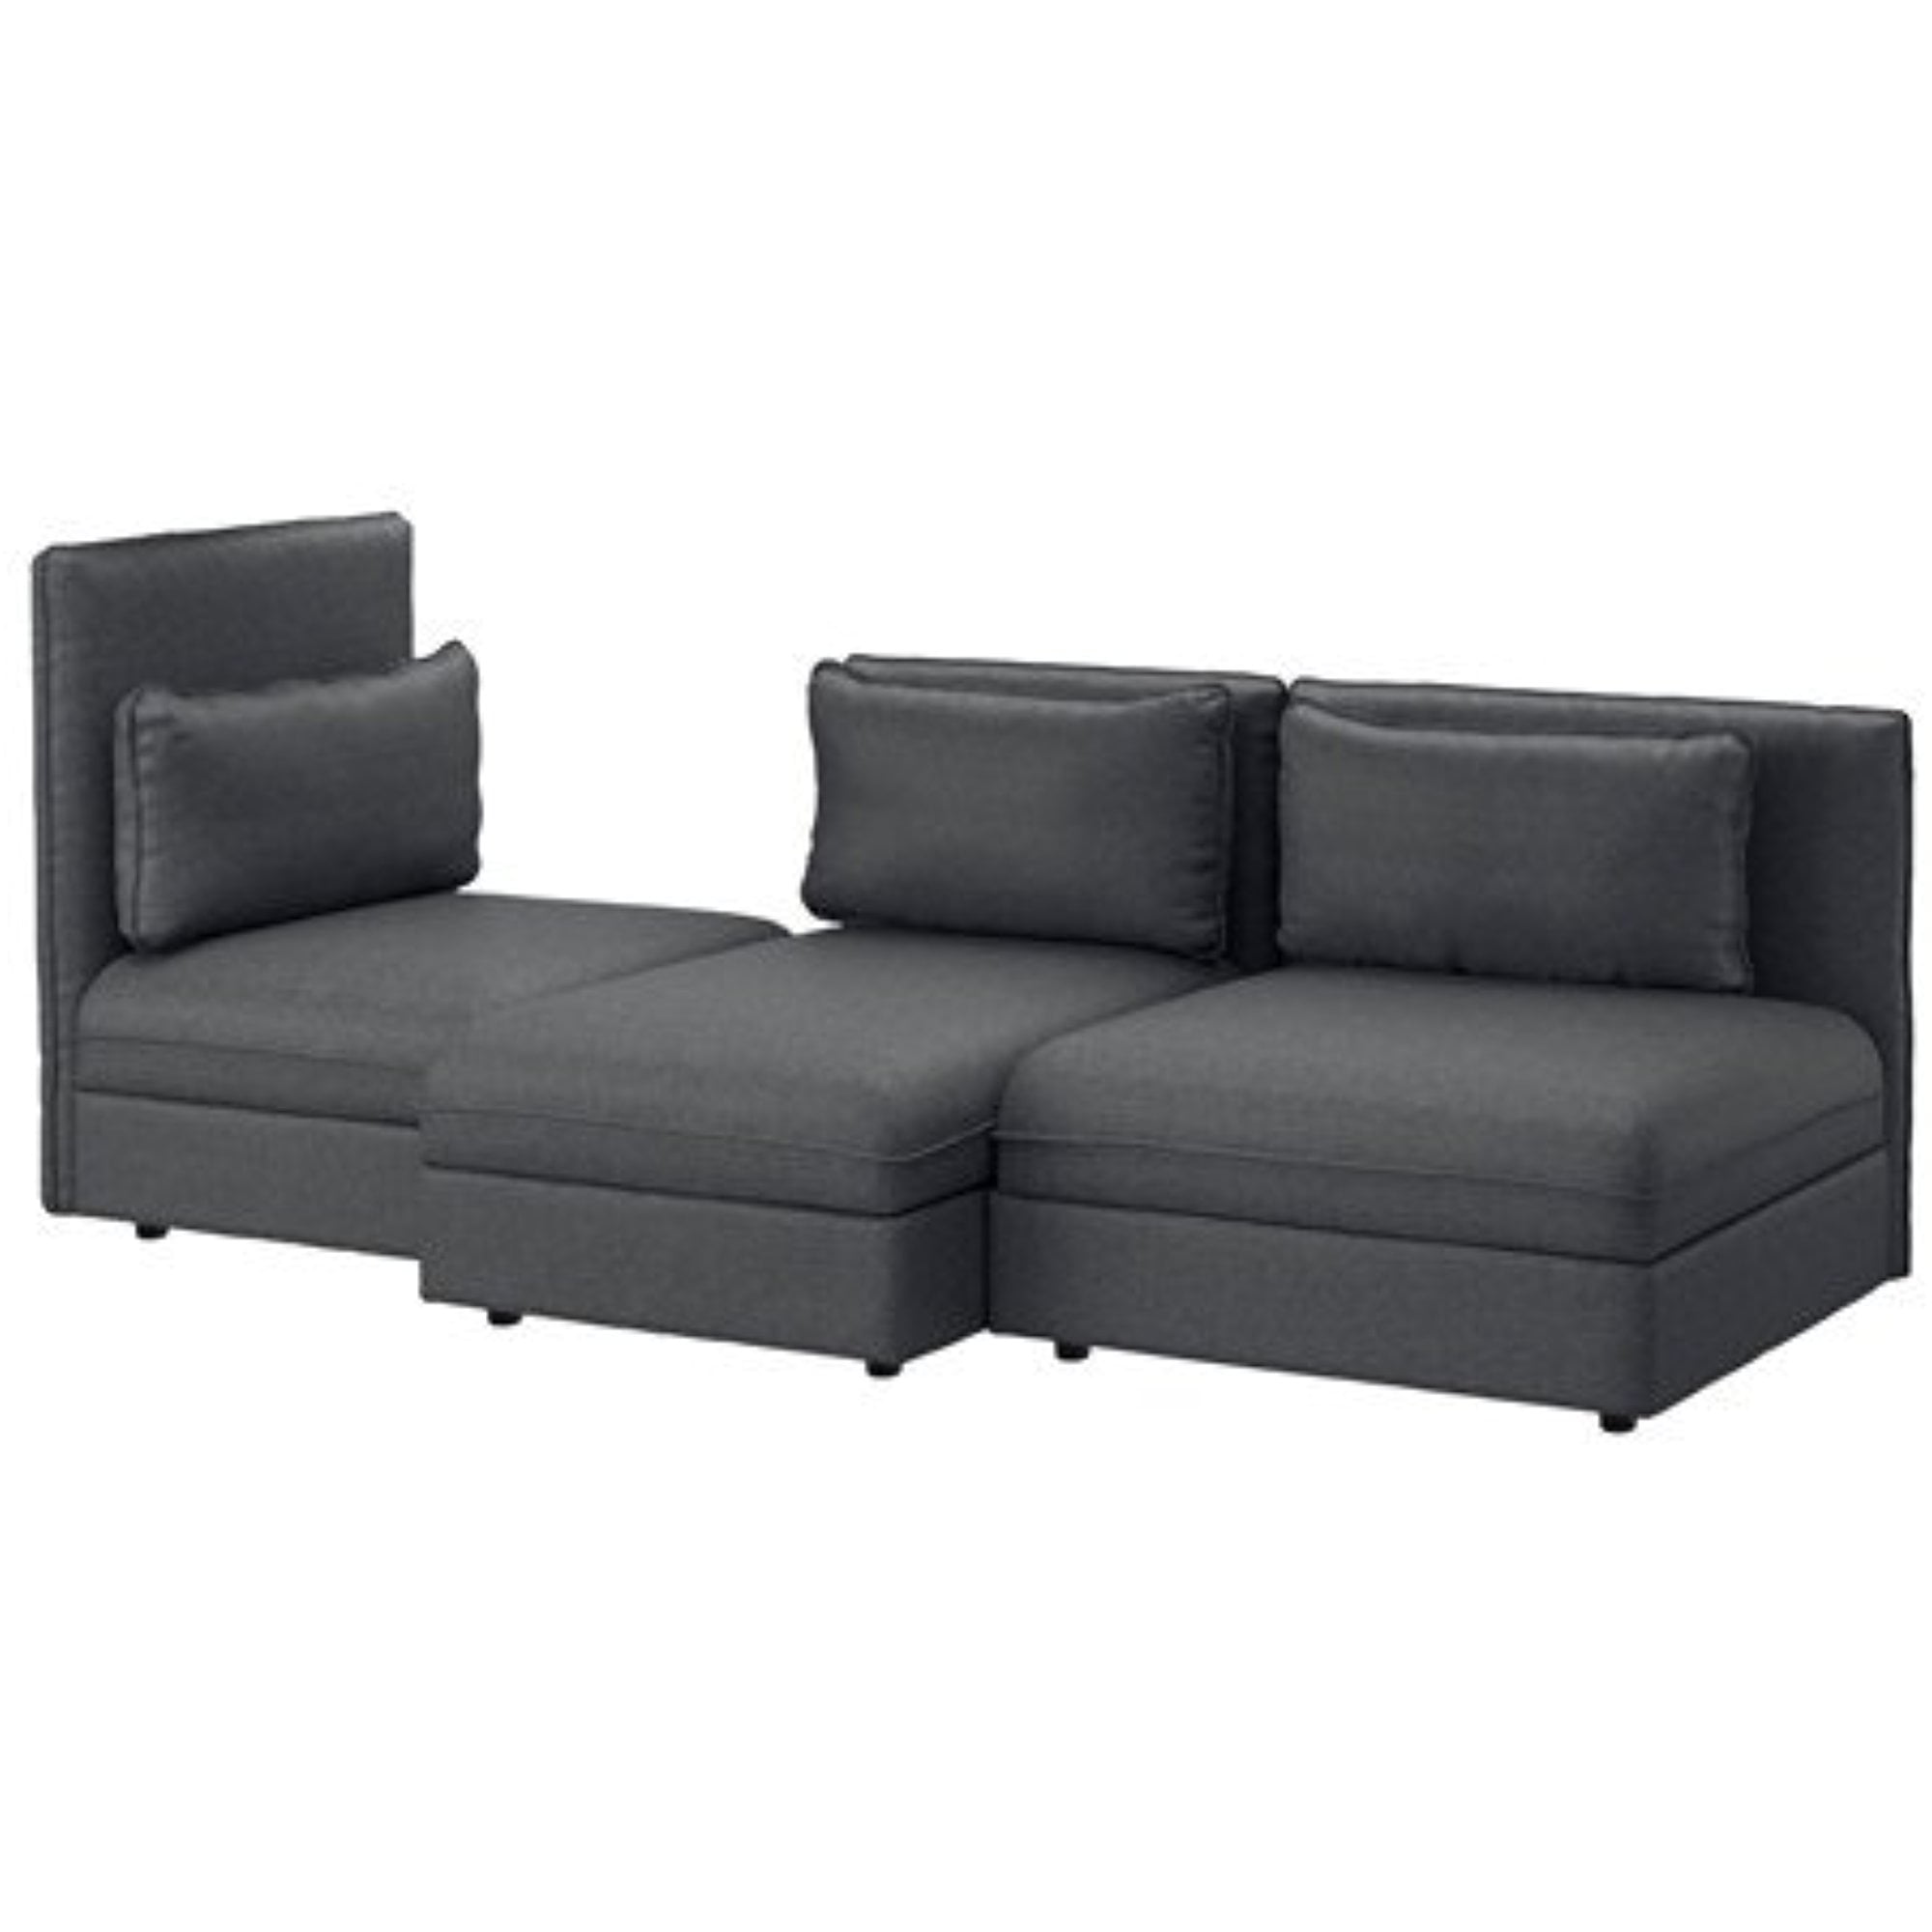  Ikea Sectional sofa  3 seat Hillared dark gray 10204 